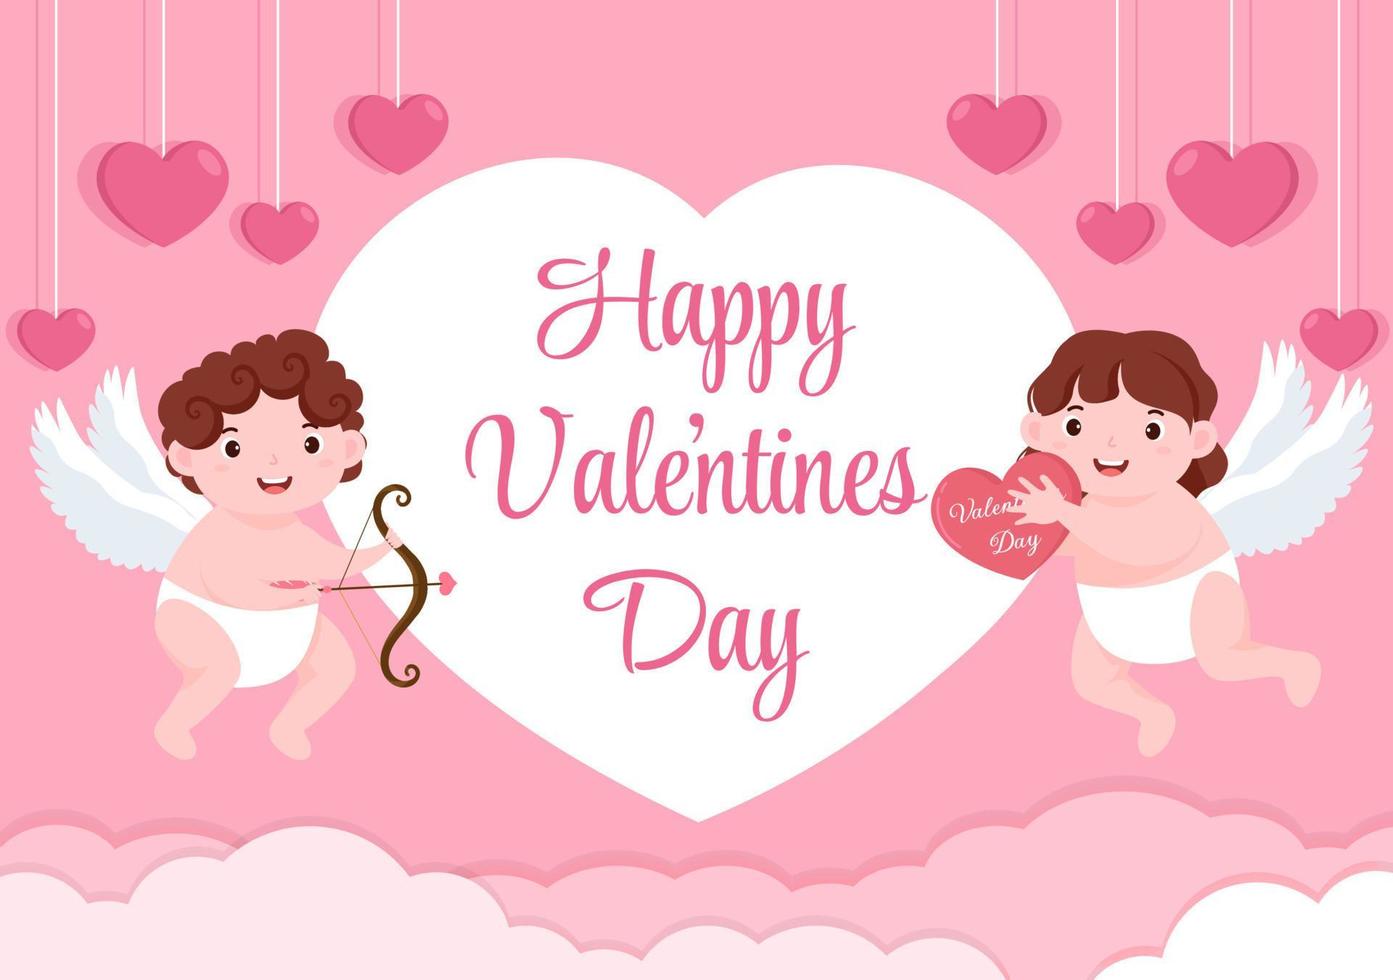 flache Designillustration des glücklichen Valentinstags, die am 17. Februar mit nettem Amor, Engeln auf Wolken für Liebesgrußkarte gedacht wird vektor